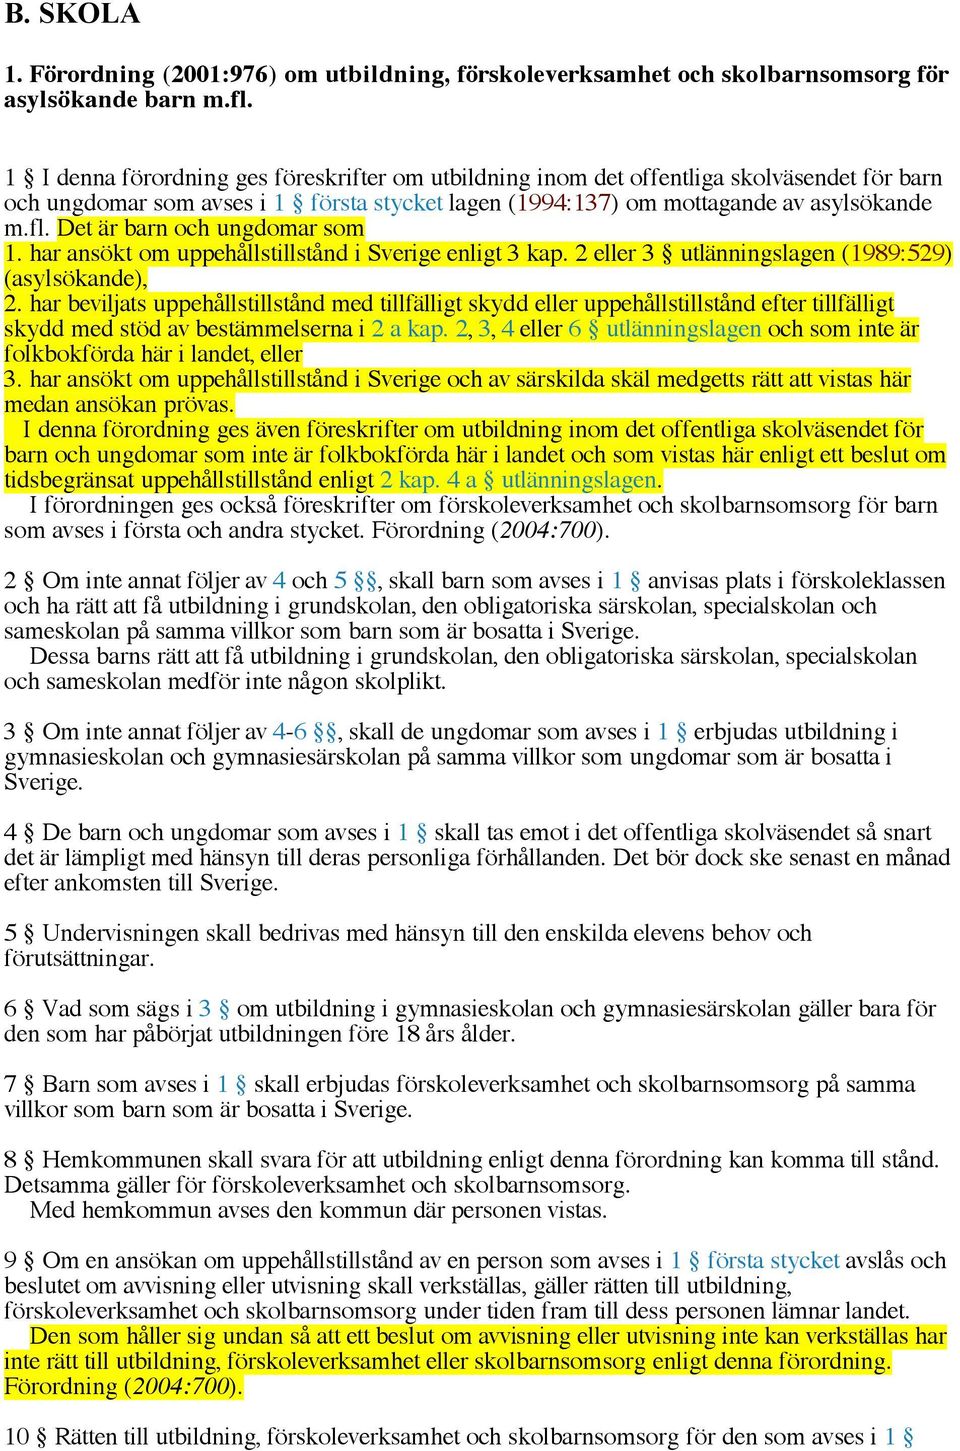 Det är barn och ungdomar som 1. har ansökt om uppehållstillstånd i Sverige enligt 3 kap. 2 eller 3 utlänningslagen (1989:529) (asylsökande), 2.